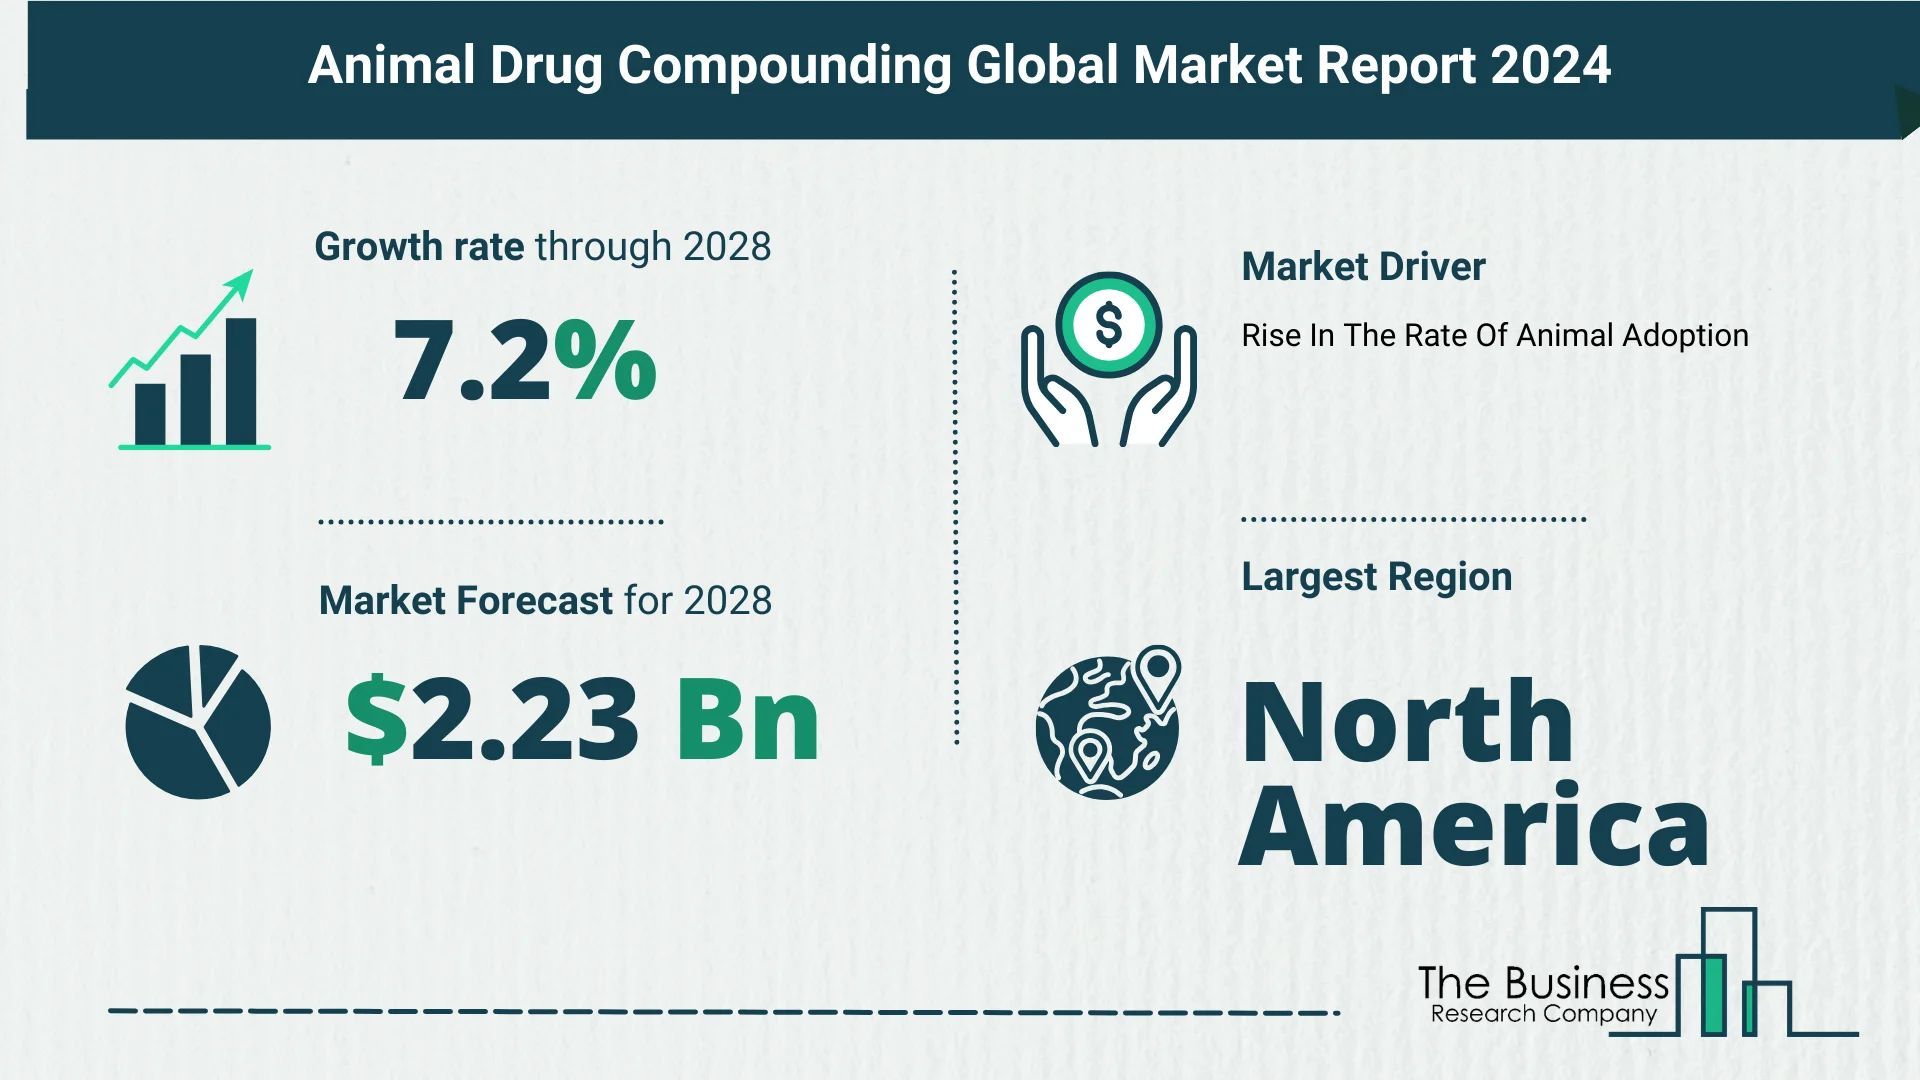 Global Animal Drug Compounding Market Trends